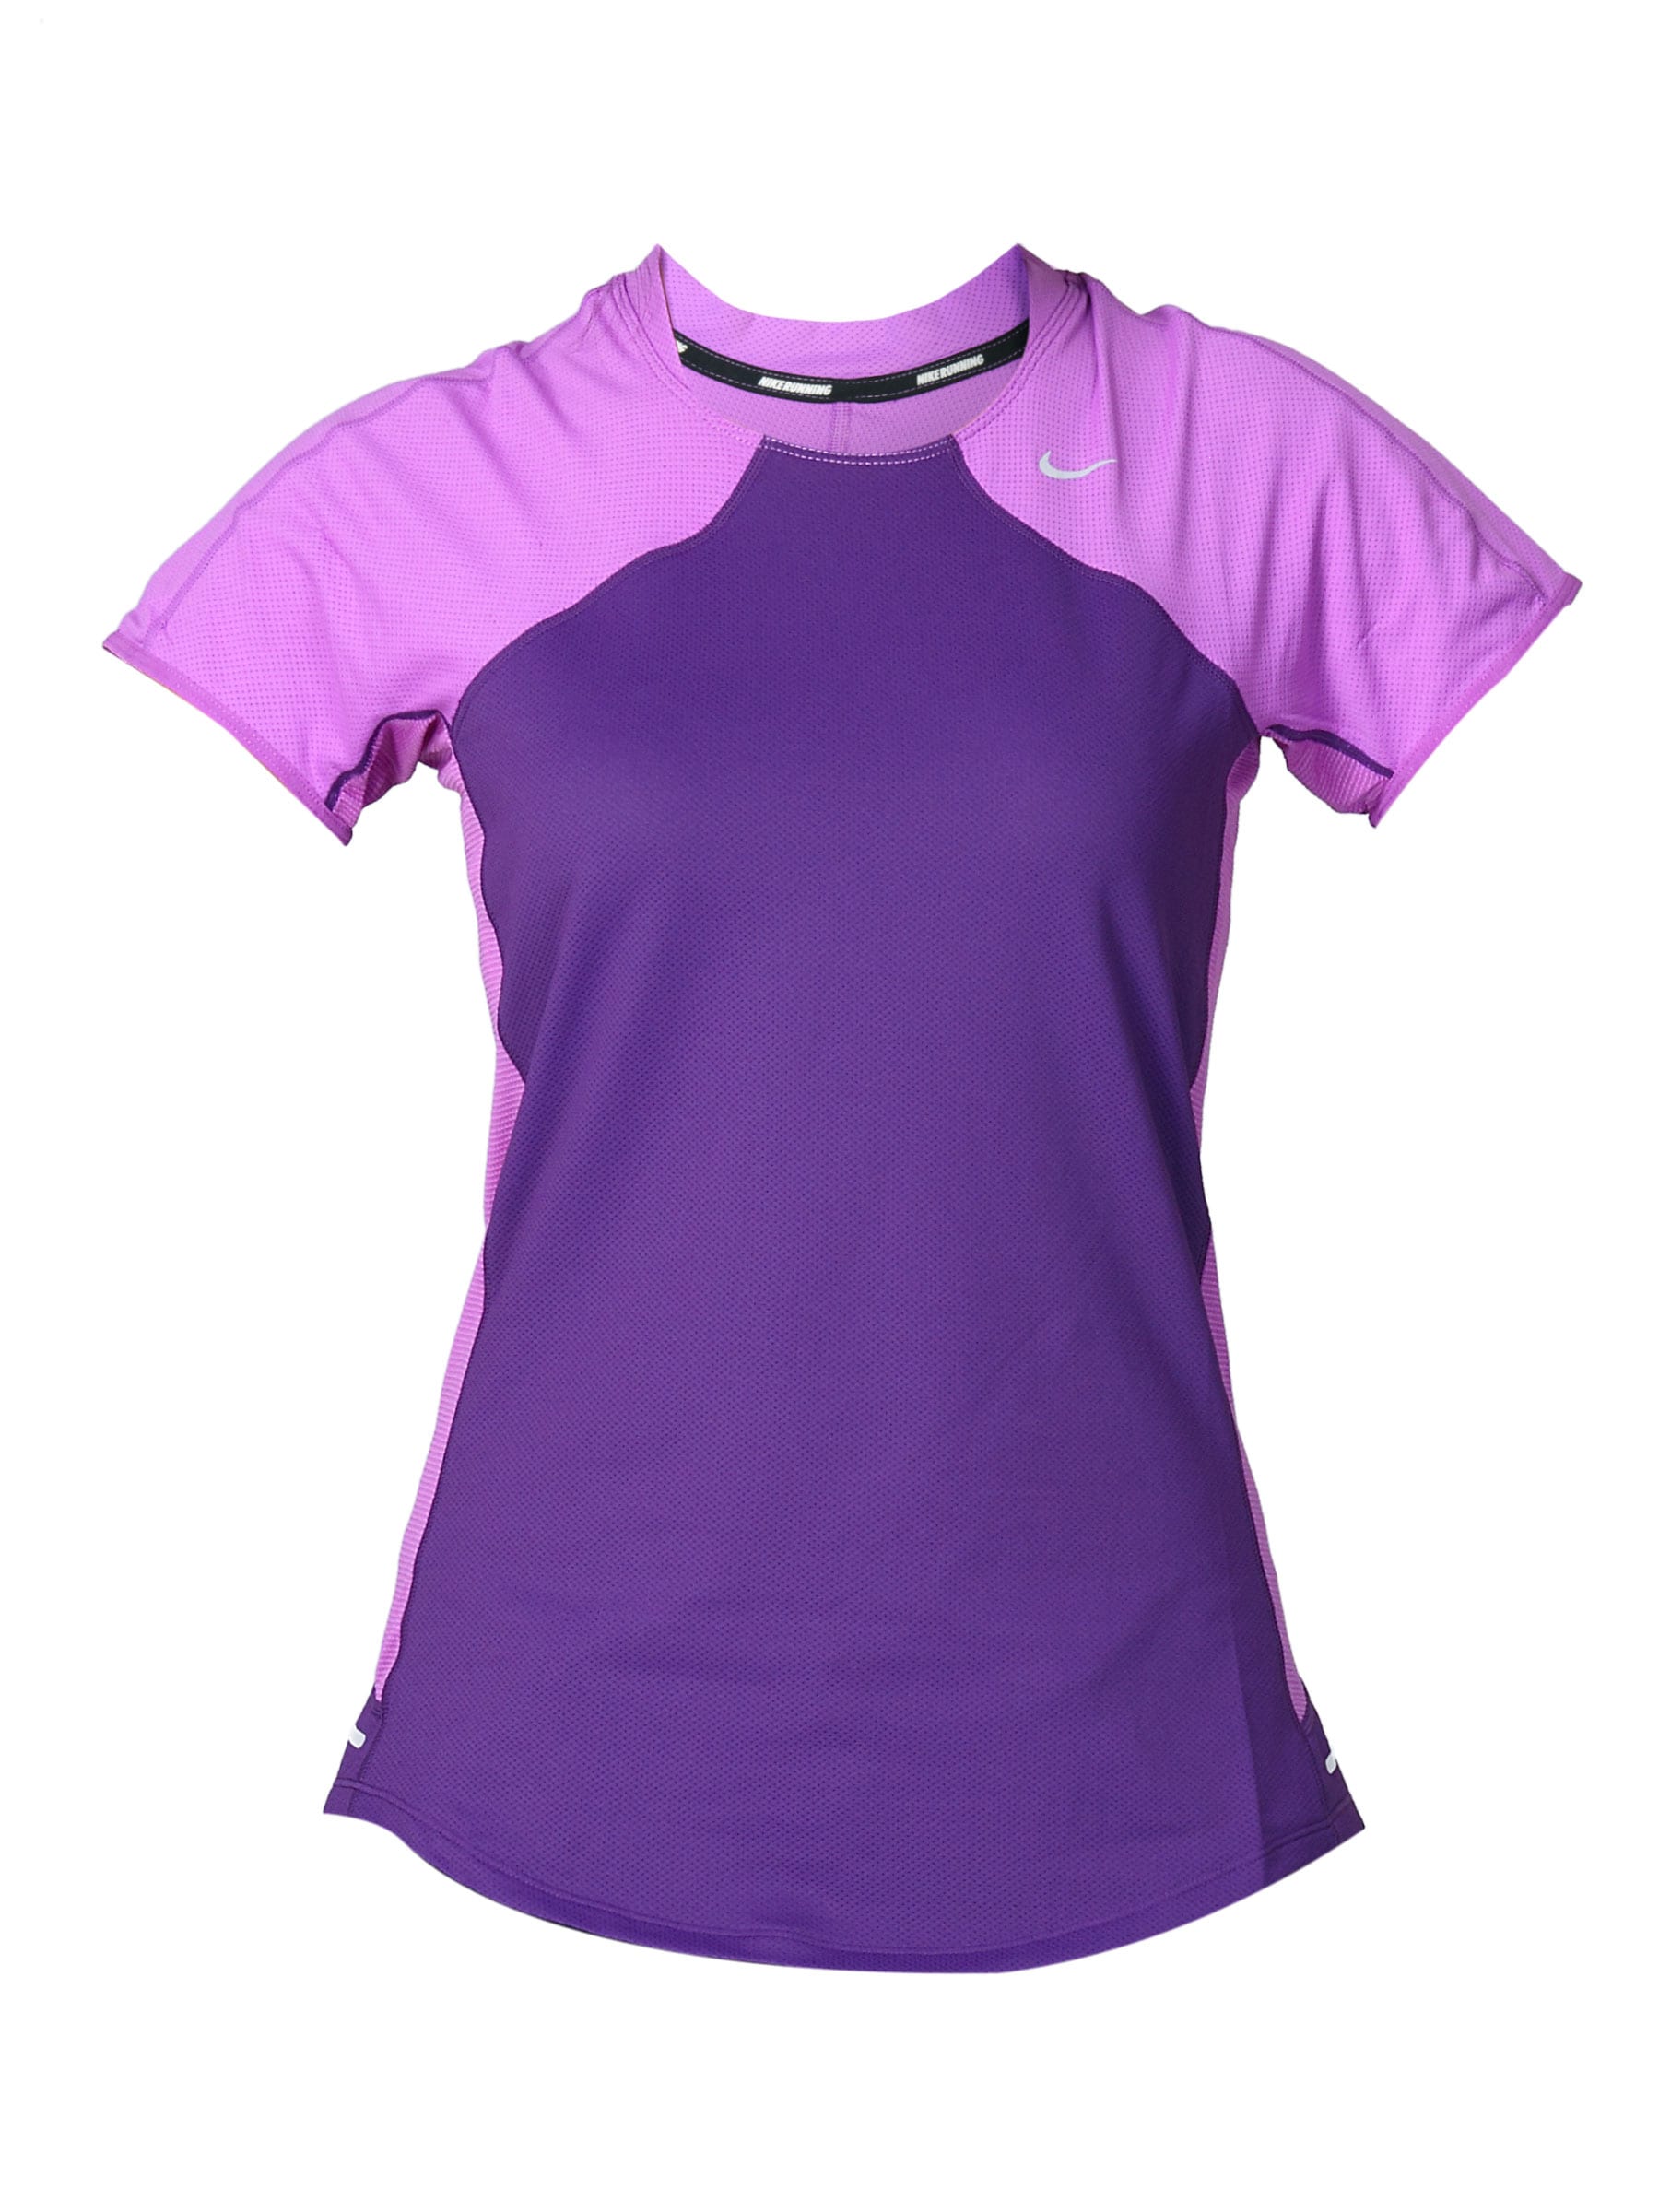 Nike Women's Nike Spher Purple T-shirt